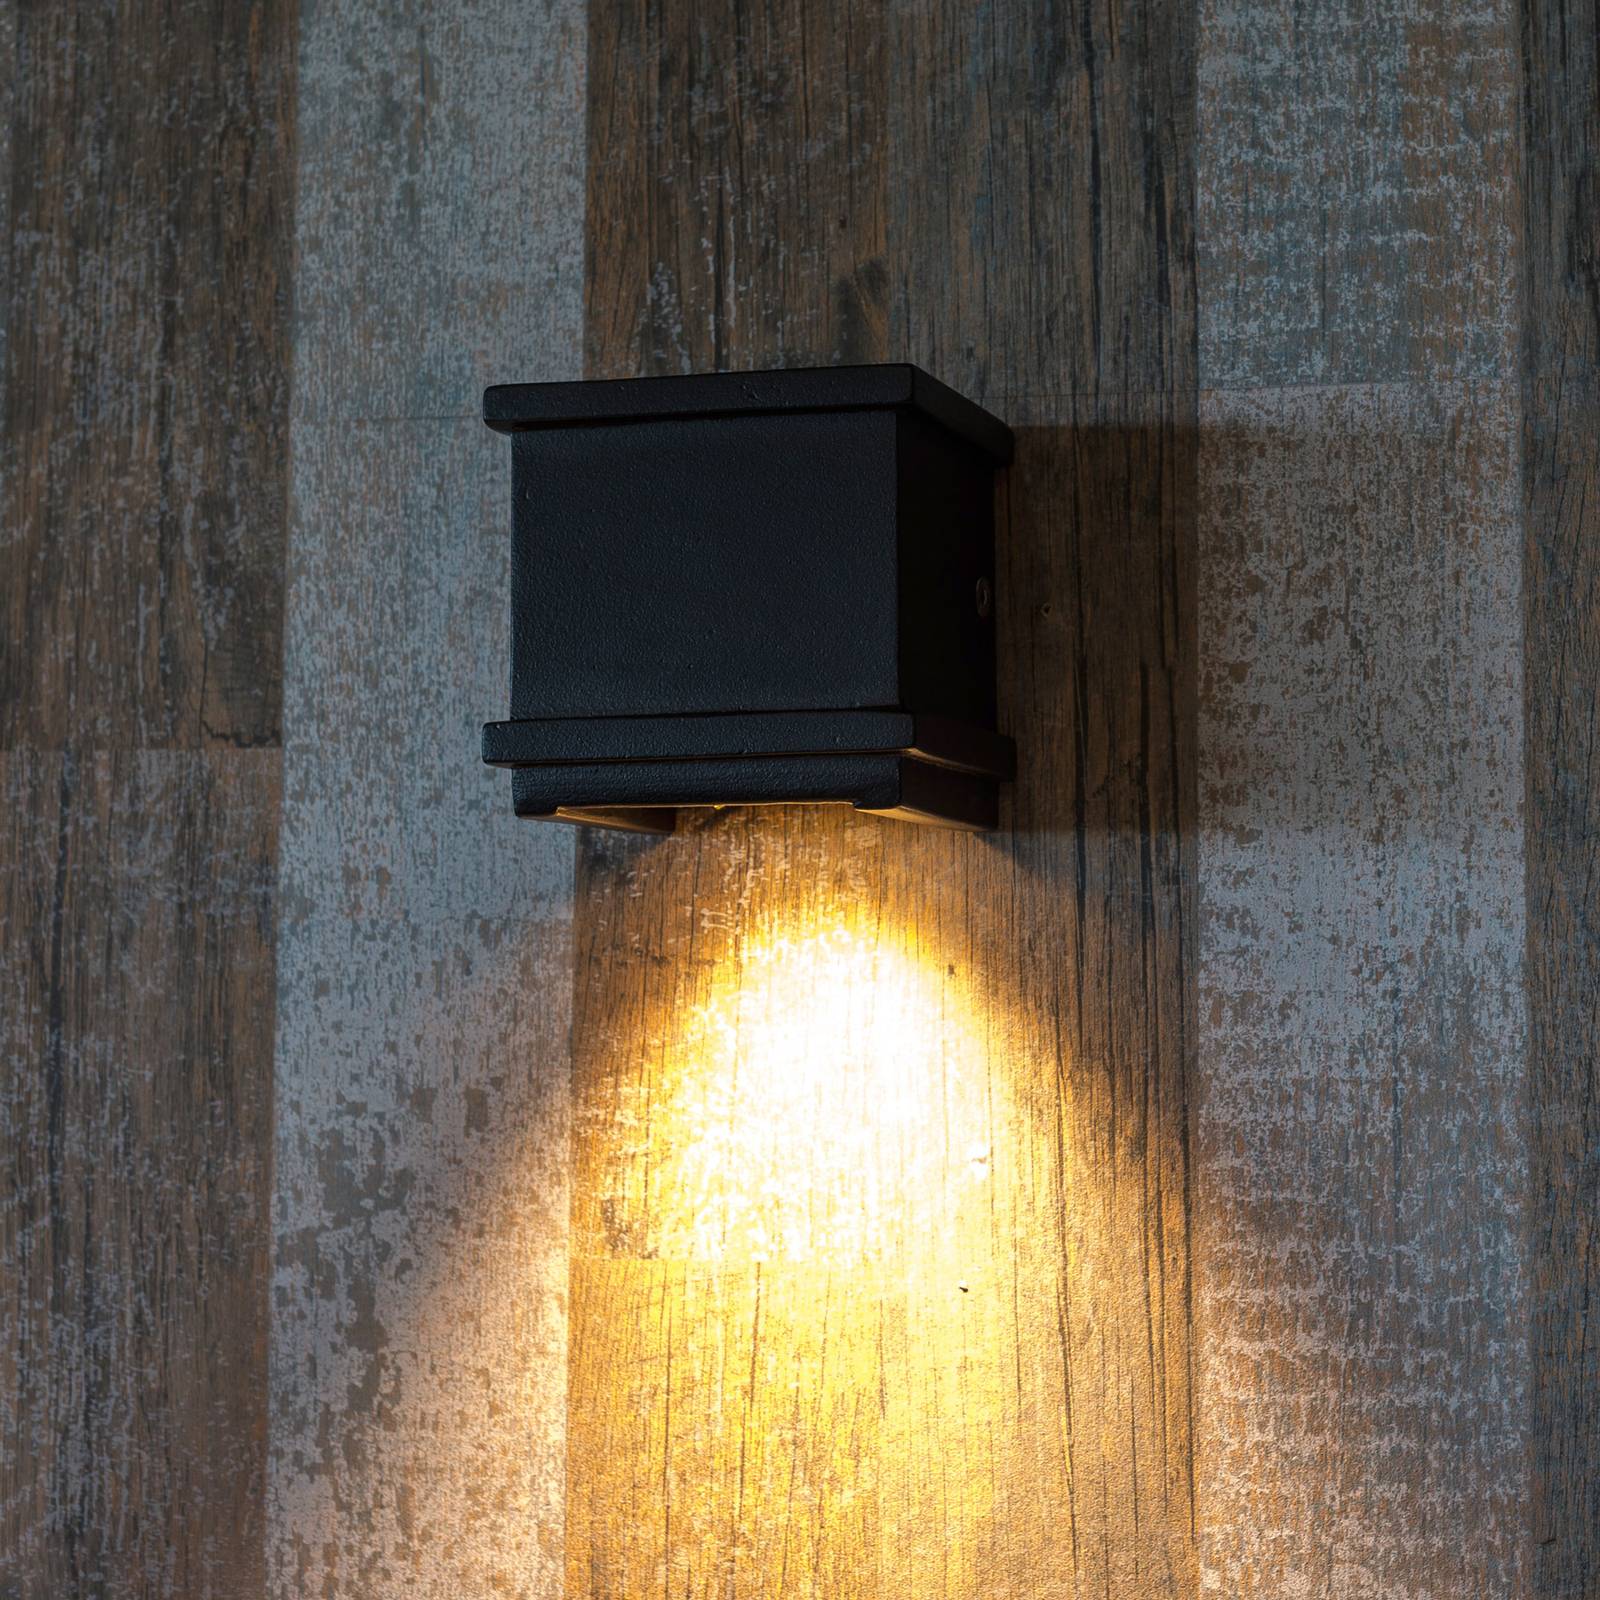 K.s. verlichting borgo kültéri fali lámpa alumíniumból, fekete színben